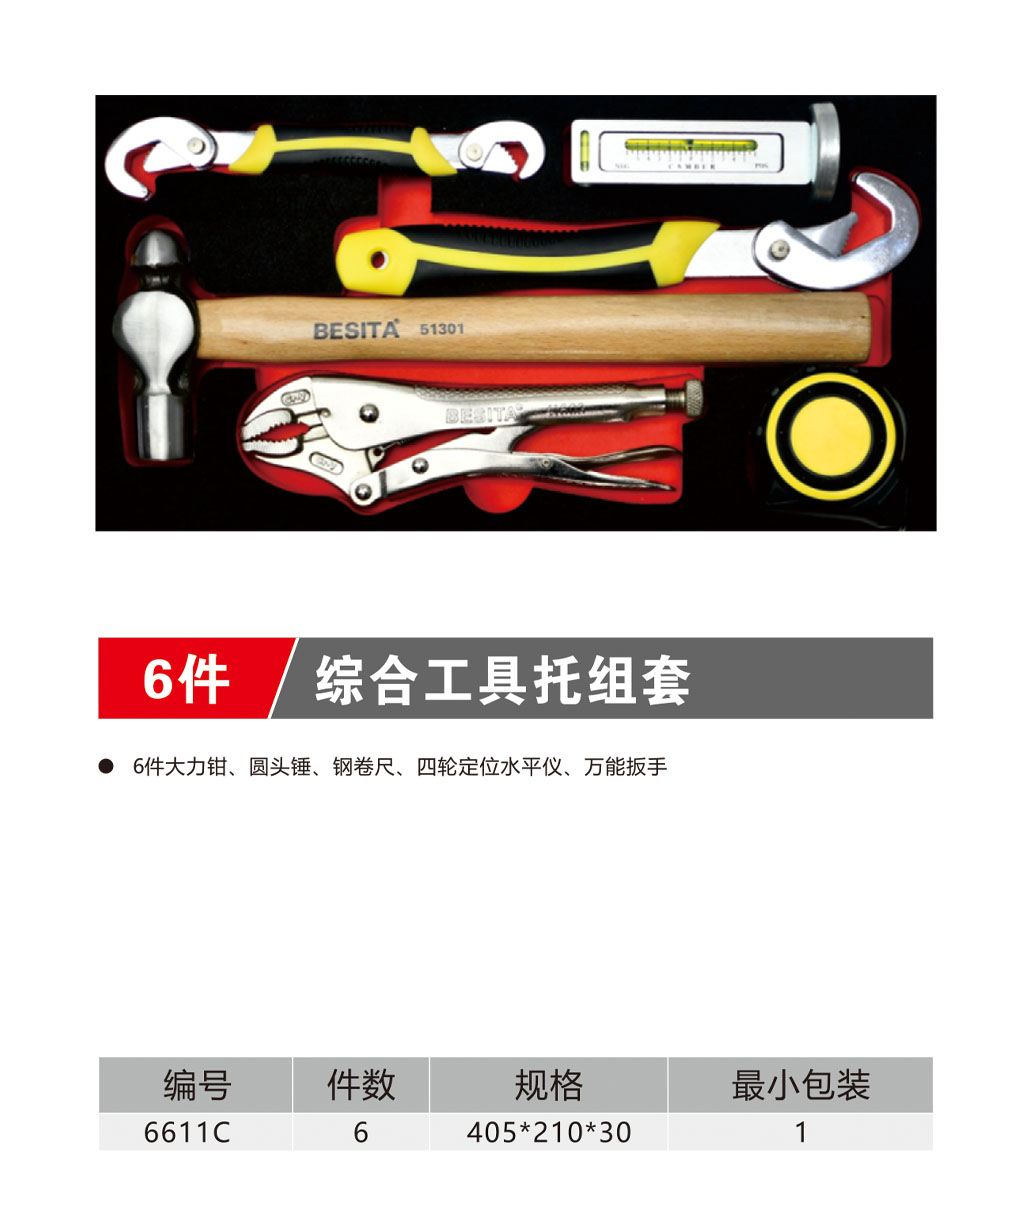 6件综合工具托组套（NO.6611C）